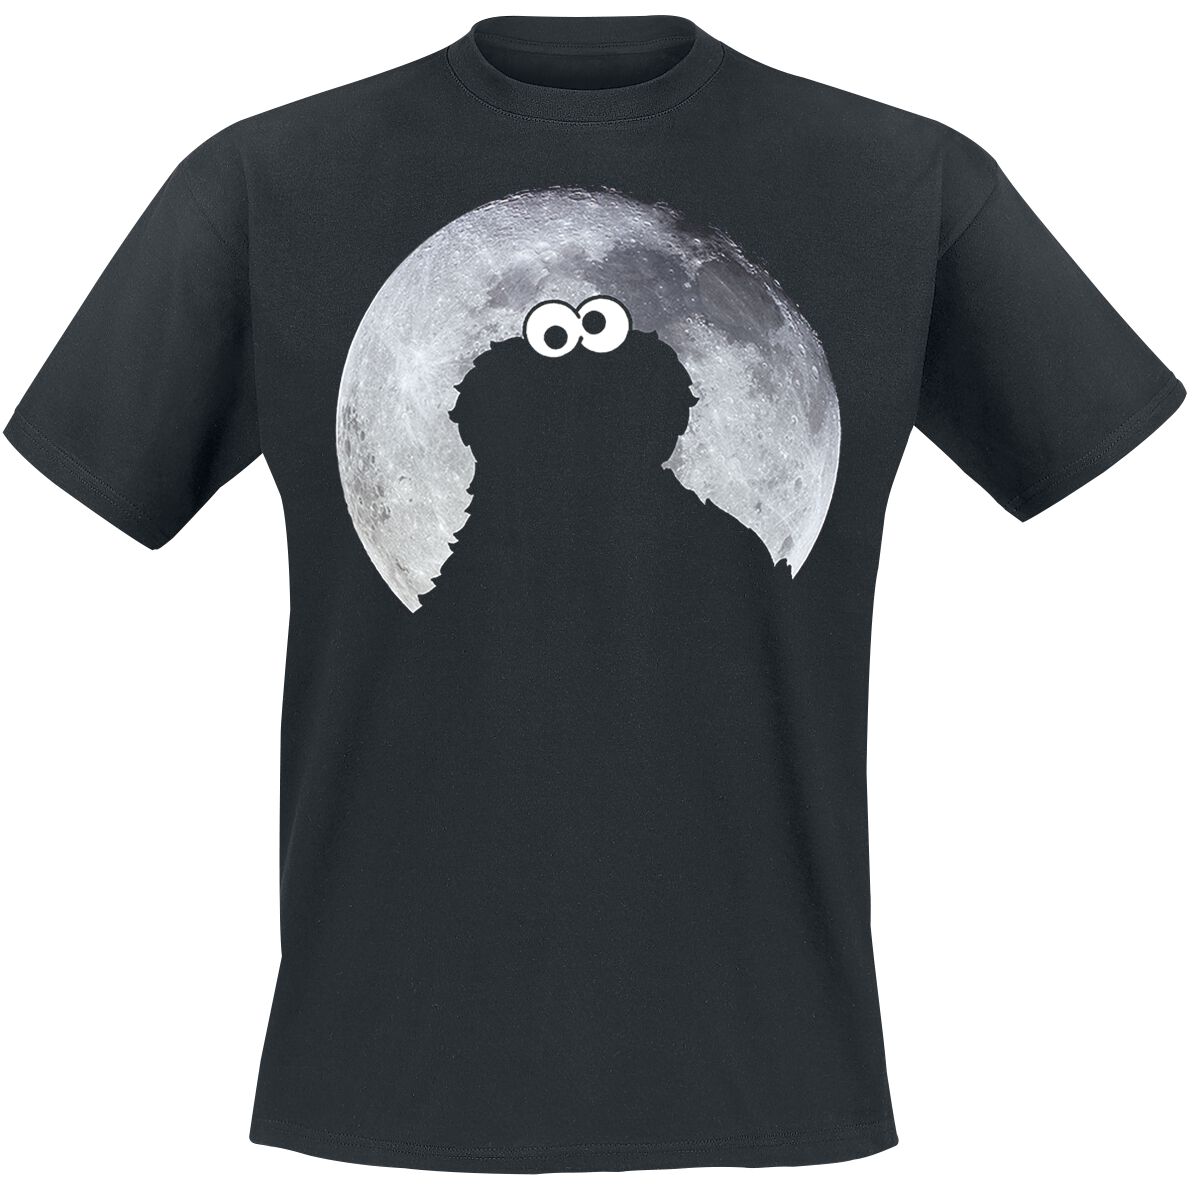 Sesamstraße T-Shirt - Cookie Monster - Moonnight - S bis 5XL - für Männer - Größe S - schwarz  - Lizenzierter Fanartikel